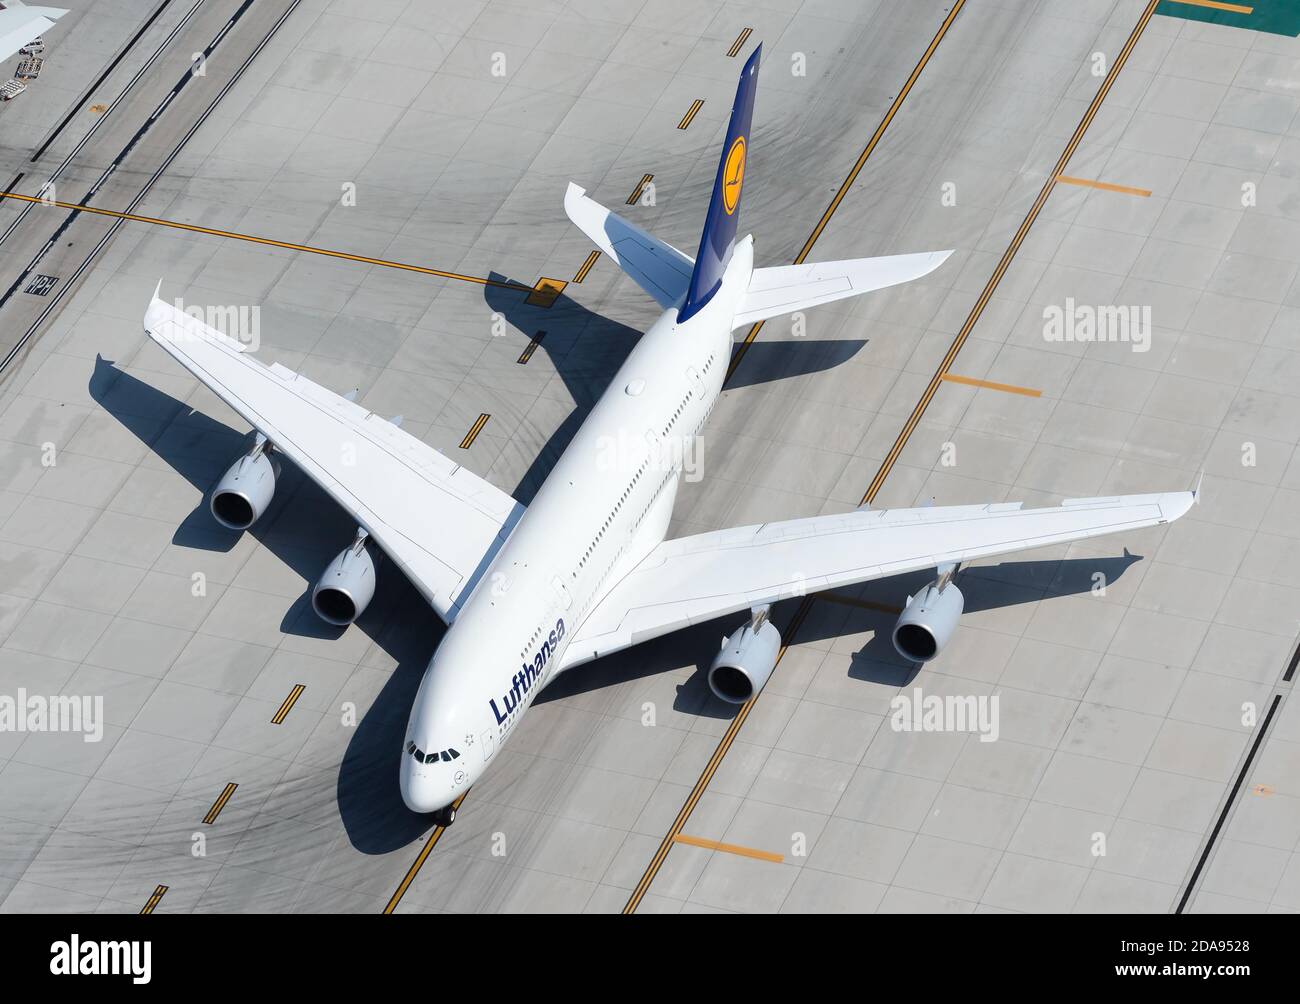 Lufthansa Airbus A380 en train de rouler sur des lignes de taxis. A380-800 avion de la compagnie aérienne allemande vue aérienne. Banque D'Images